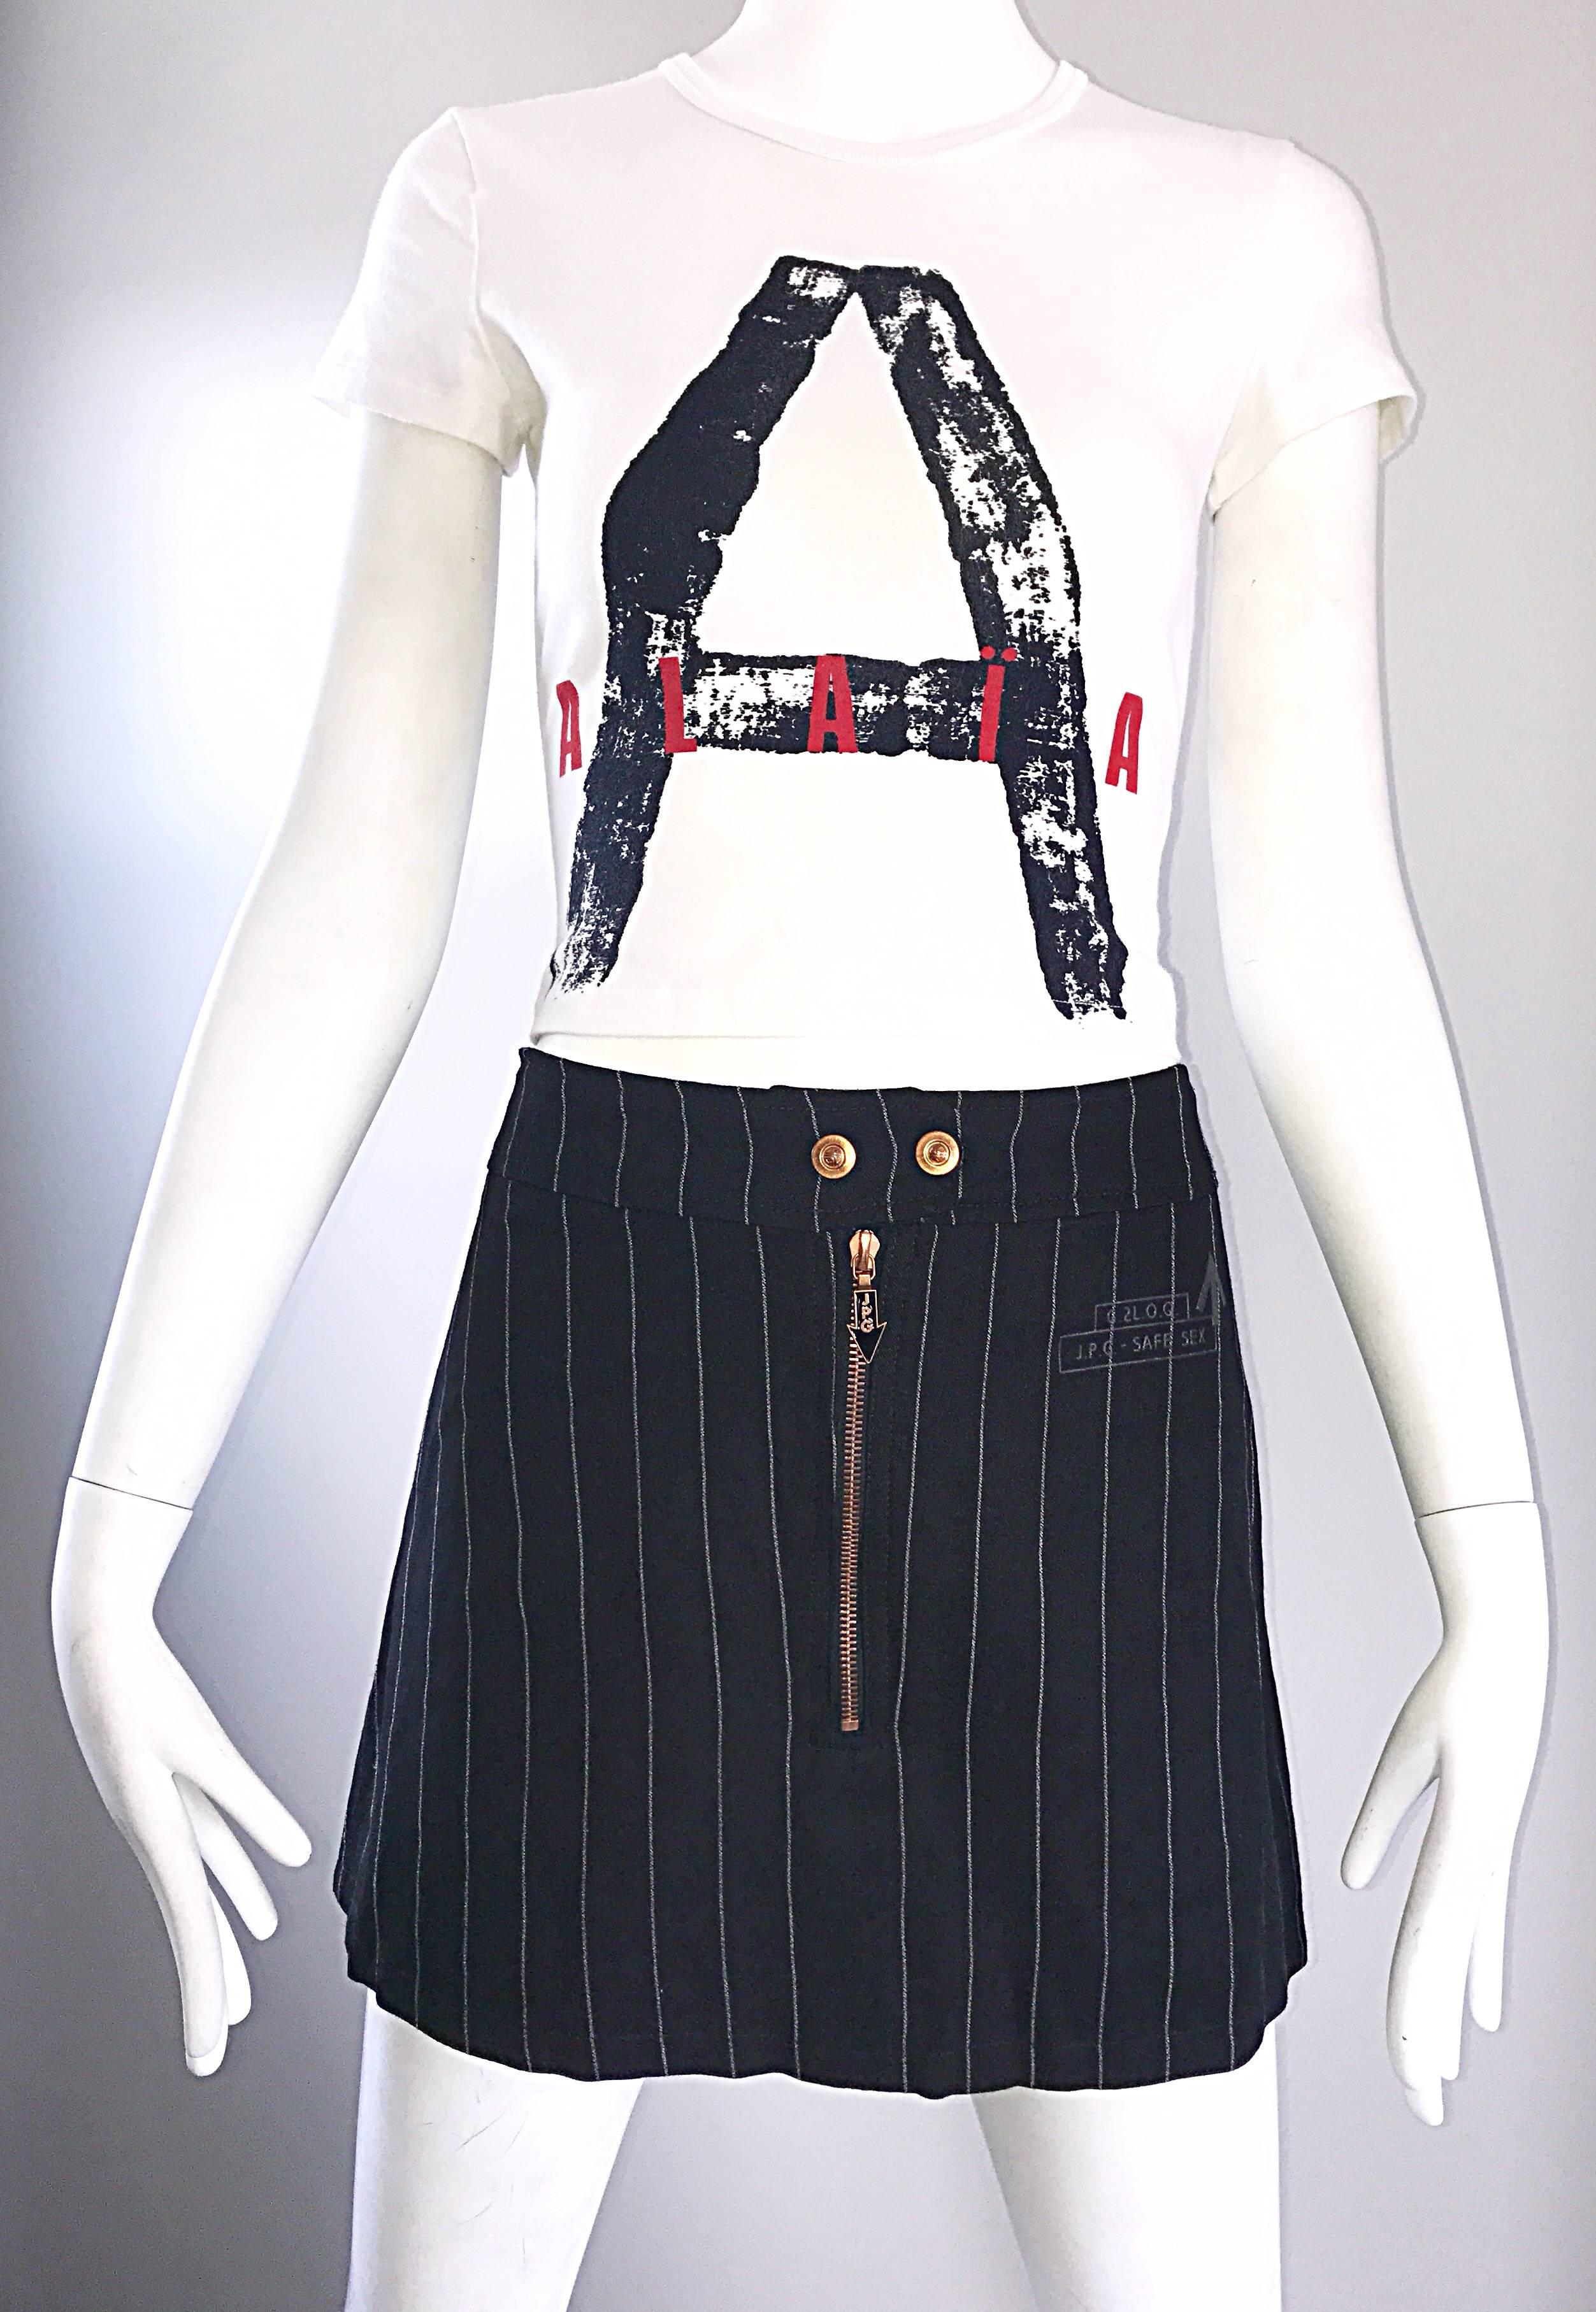 Rare Vintage Alaia X Comme Des Garcons 1990s Black + White + Red Crop Top Shirt 3